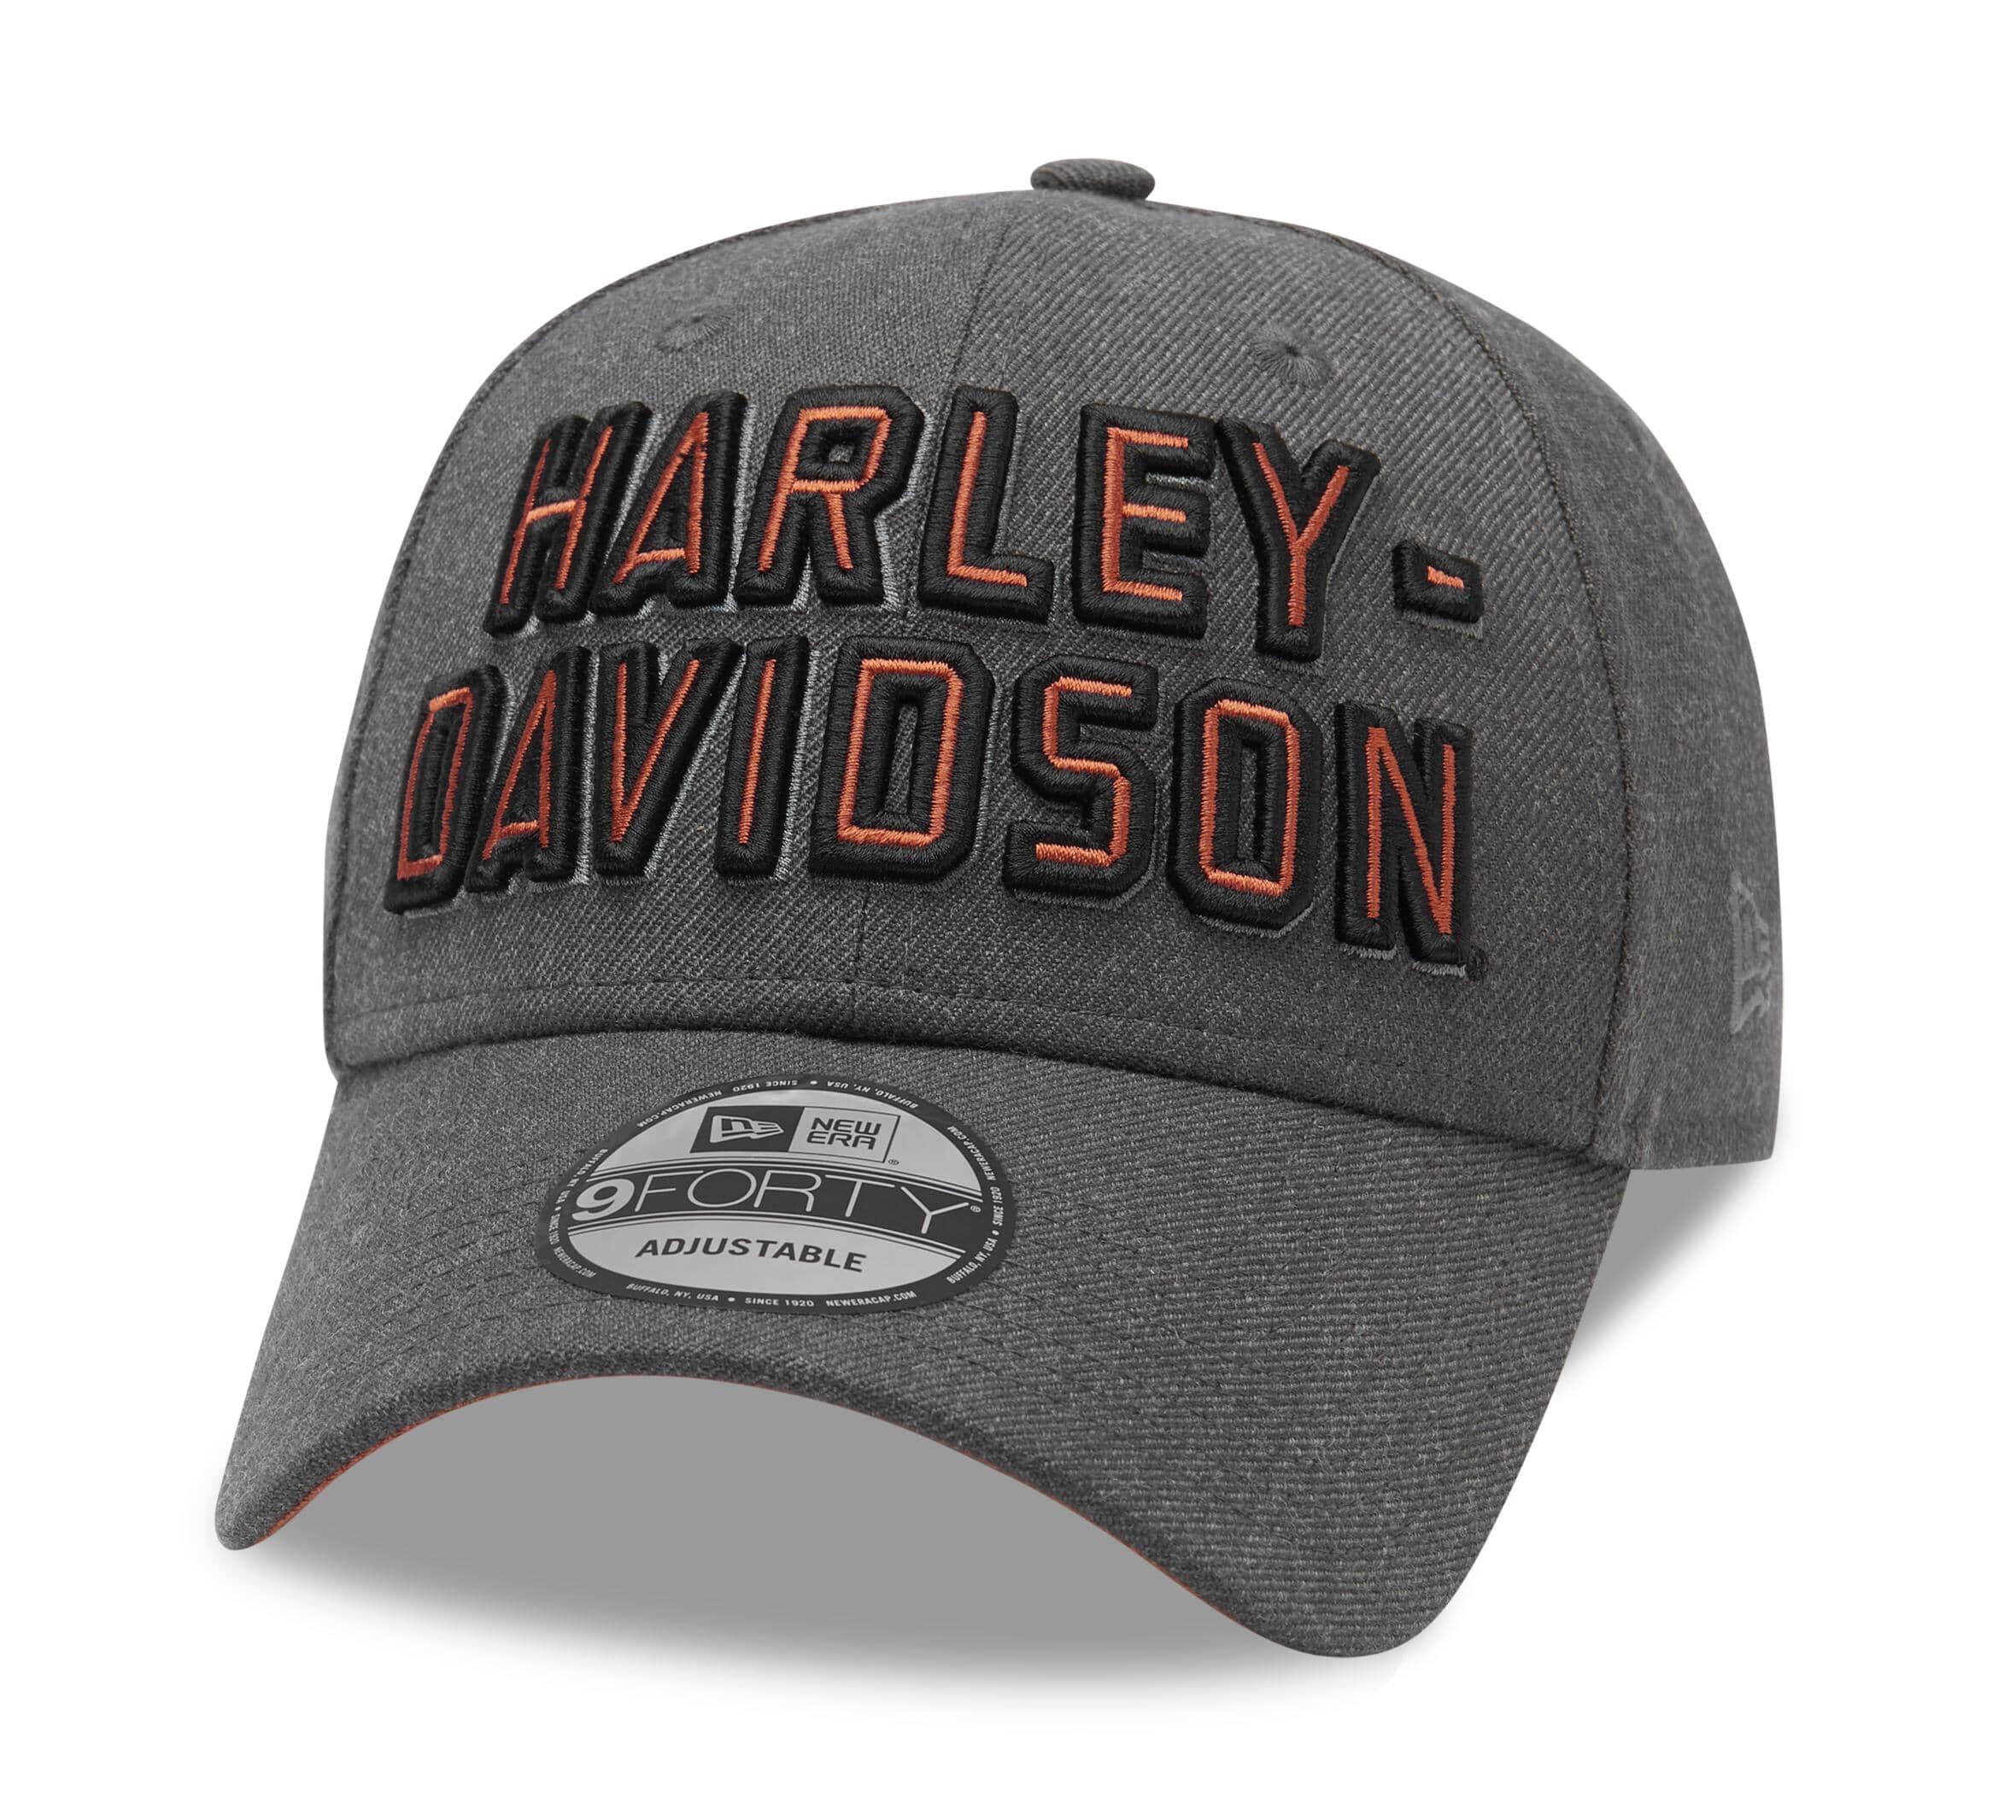 Tirelire Originale Harley Davidson - Idée cadeau pour tirelire - Gadgets Harley  Davidson - Shopbikers: produits soldés pour les passionnés